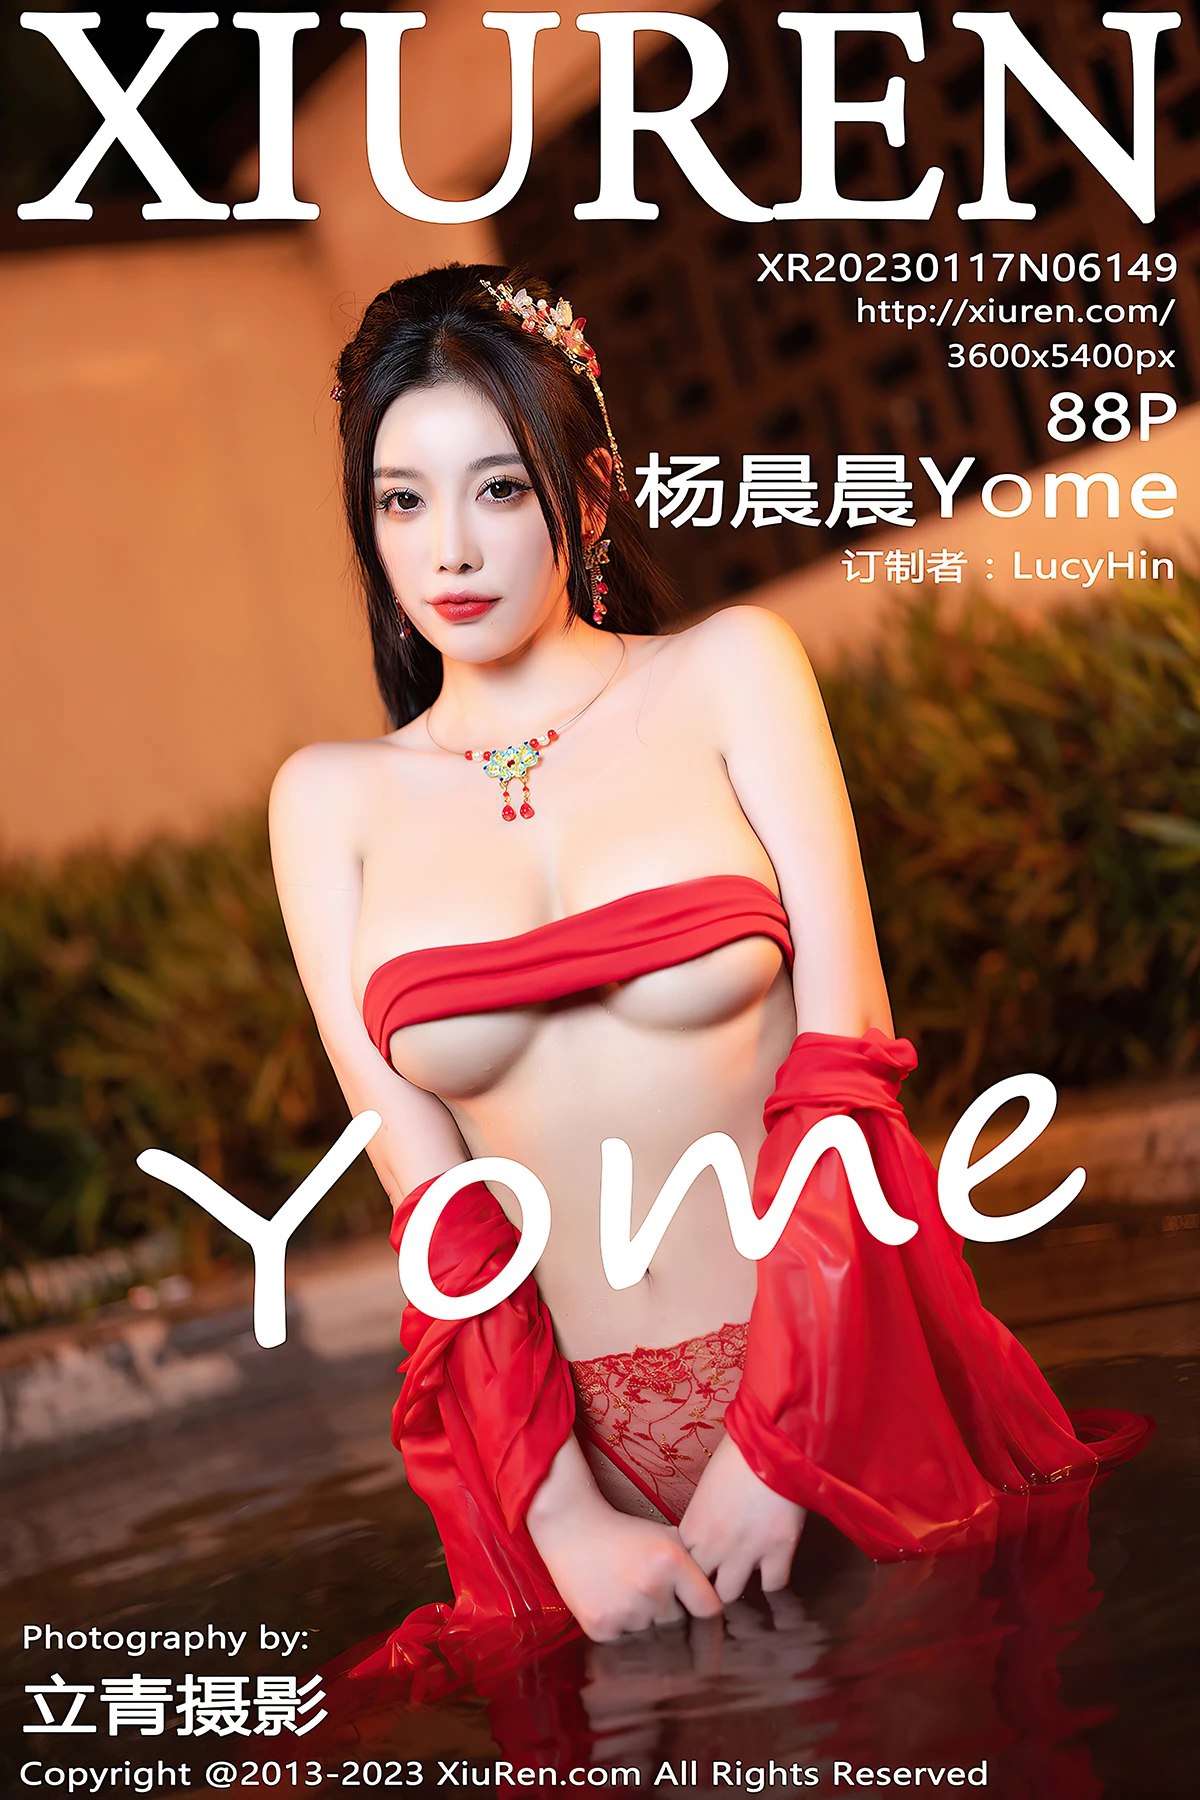 [XIUREN] No.6149 Yang Chen Chen 杨晨晨Yome (Yang Chen Chen 杨晨晨sugar) Cover Photo